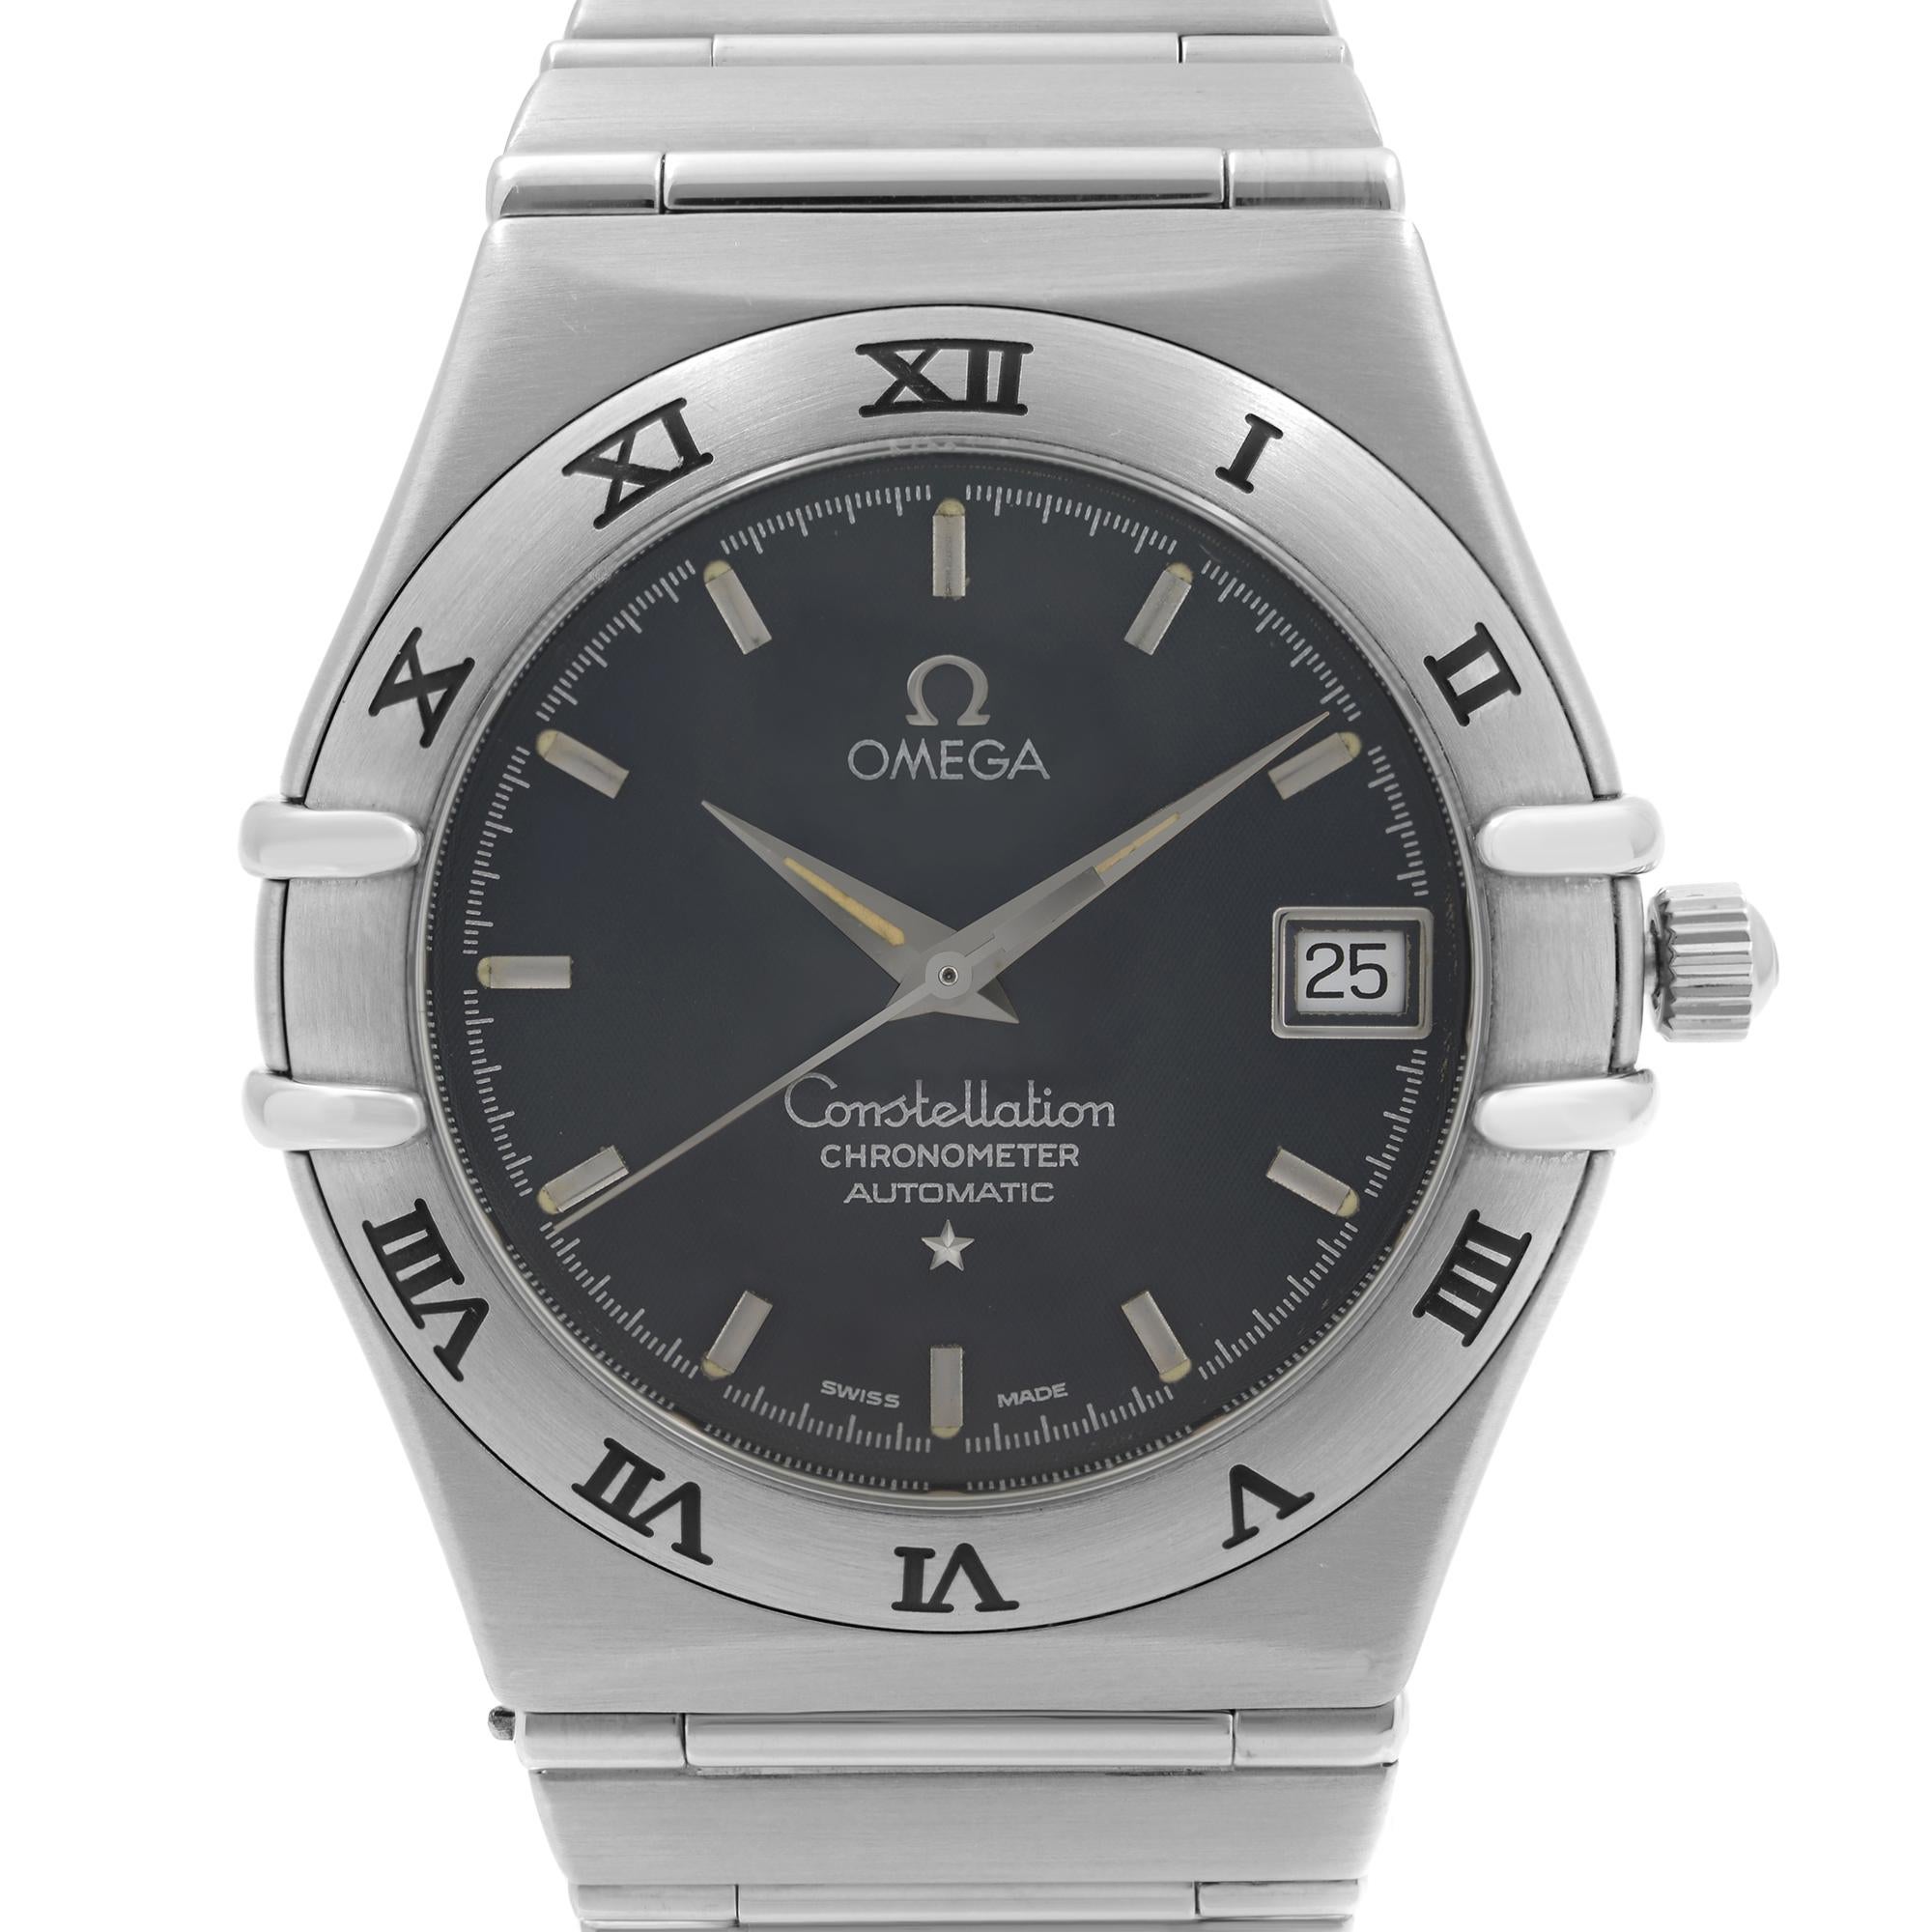 Preowned Omega Constellation Stainless Steel 35 mm Date Gray Dial Men's Automatic Watch 3681201. Le garde-temps est animé par un mouvement automatique. Caractéristiques : Boîtier en acier inoxydable poli et bracelet en acier. Lunette fixe en acier.